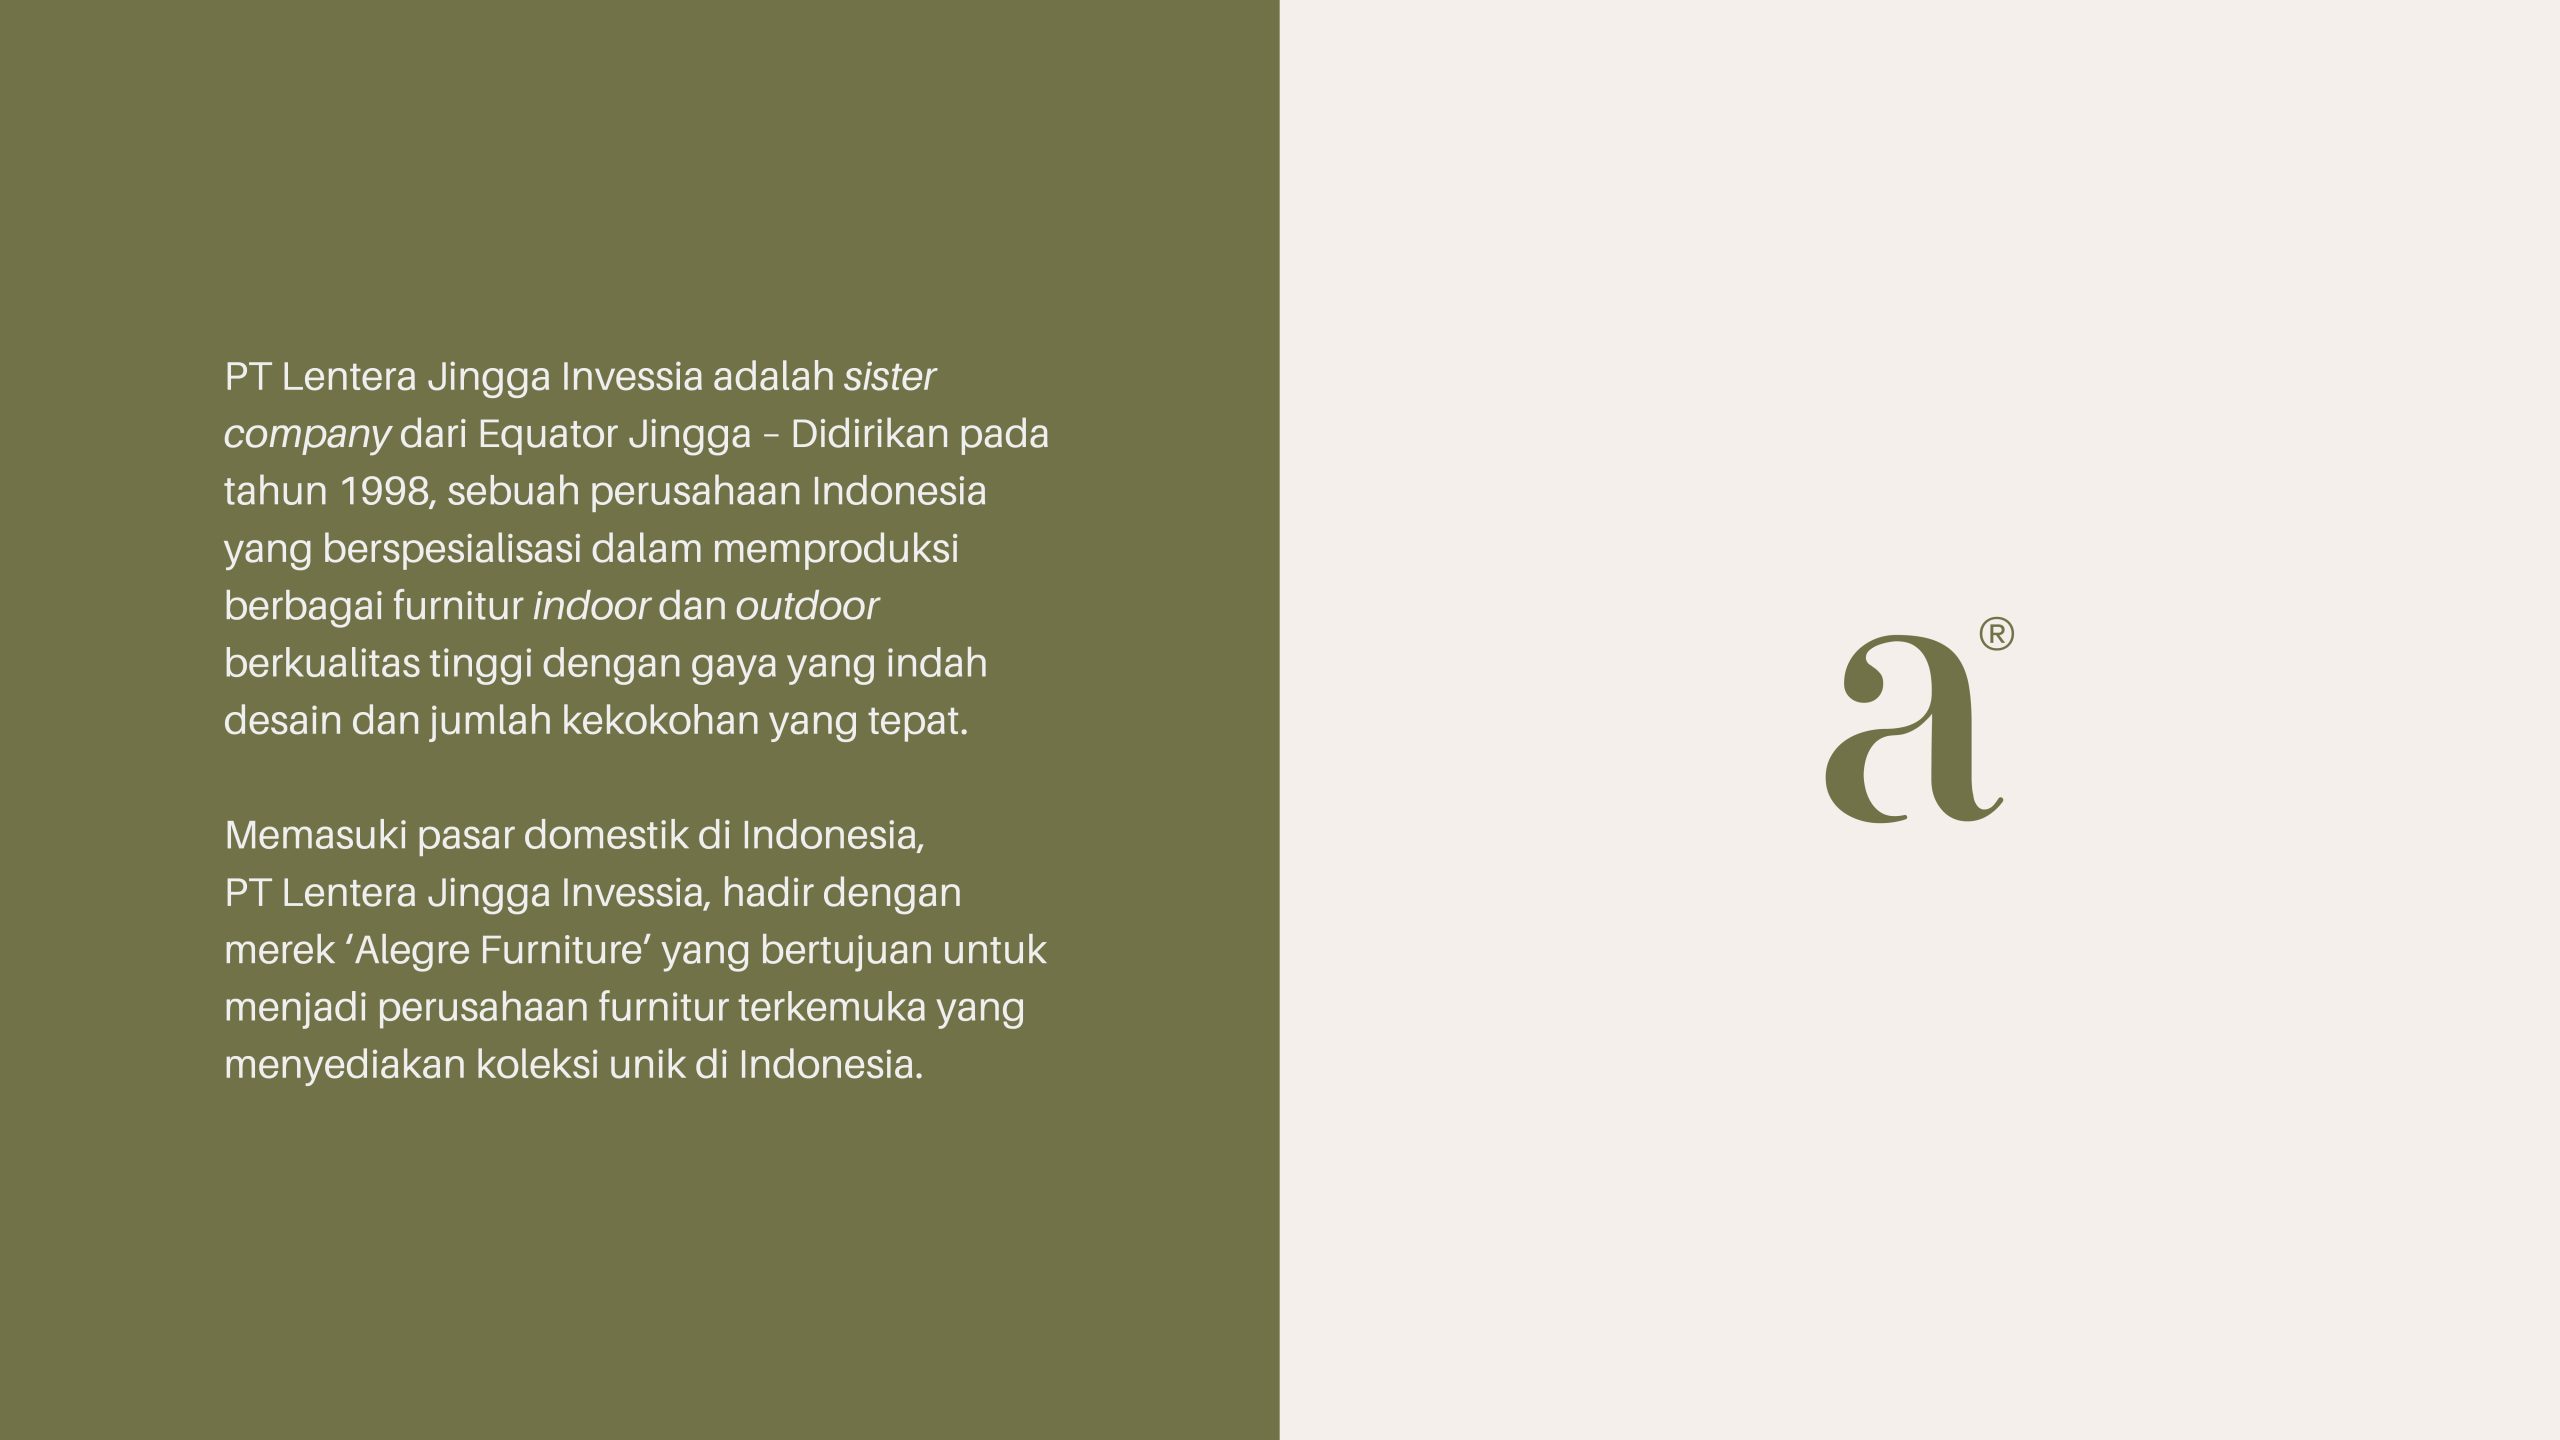 PT Lentera Jingga Invessia adalah sister company dari Equator Jingga – Didirikan pada tahun 1998, sebuah perusahaan Indonesia yang berspesialisasi dalam memproduksi berbagai furnitur indoor dan outdoor berkualitas tinggi dengan gaya yang indah
desain dan jumlah kekokohan yang tepat.

Memasuki pasar domestik di Indonesia, PT Lentera Jingga Invessia, hadir dengan merek ‘Alegre Furniture’ yang bertujuan untuk menjadi perusahaan furnitur terkemuka yang menyediakan koleksi unik di Indonesia.